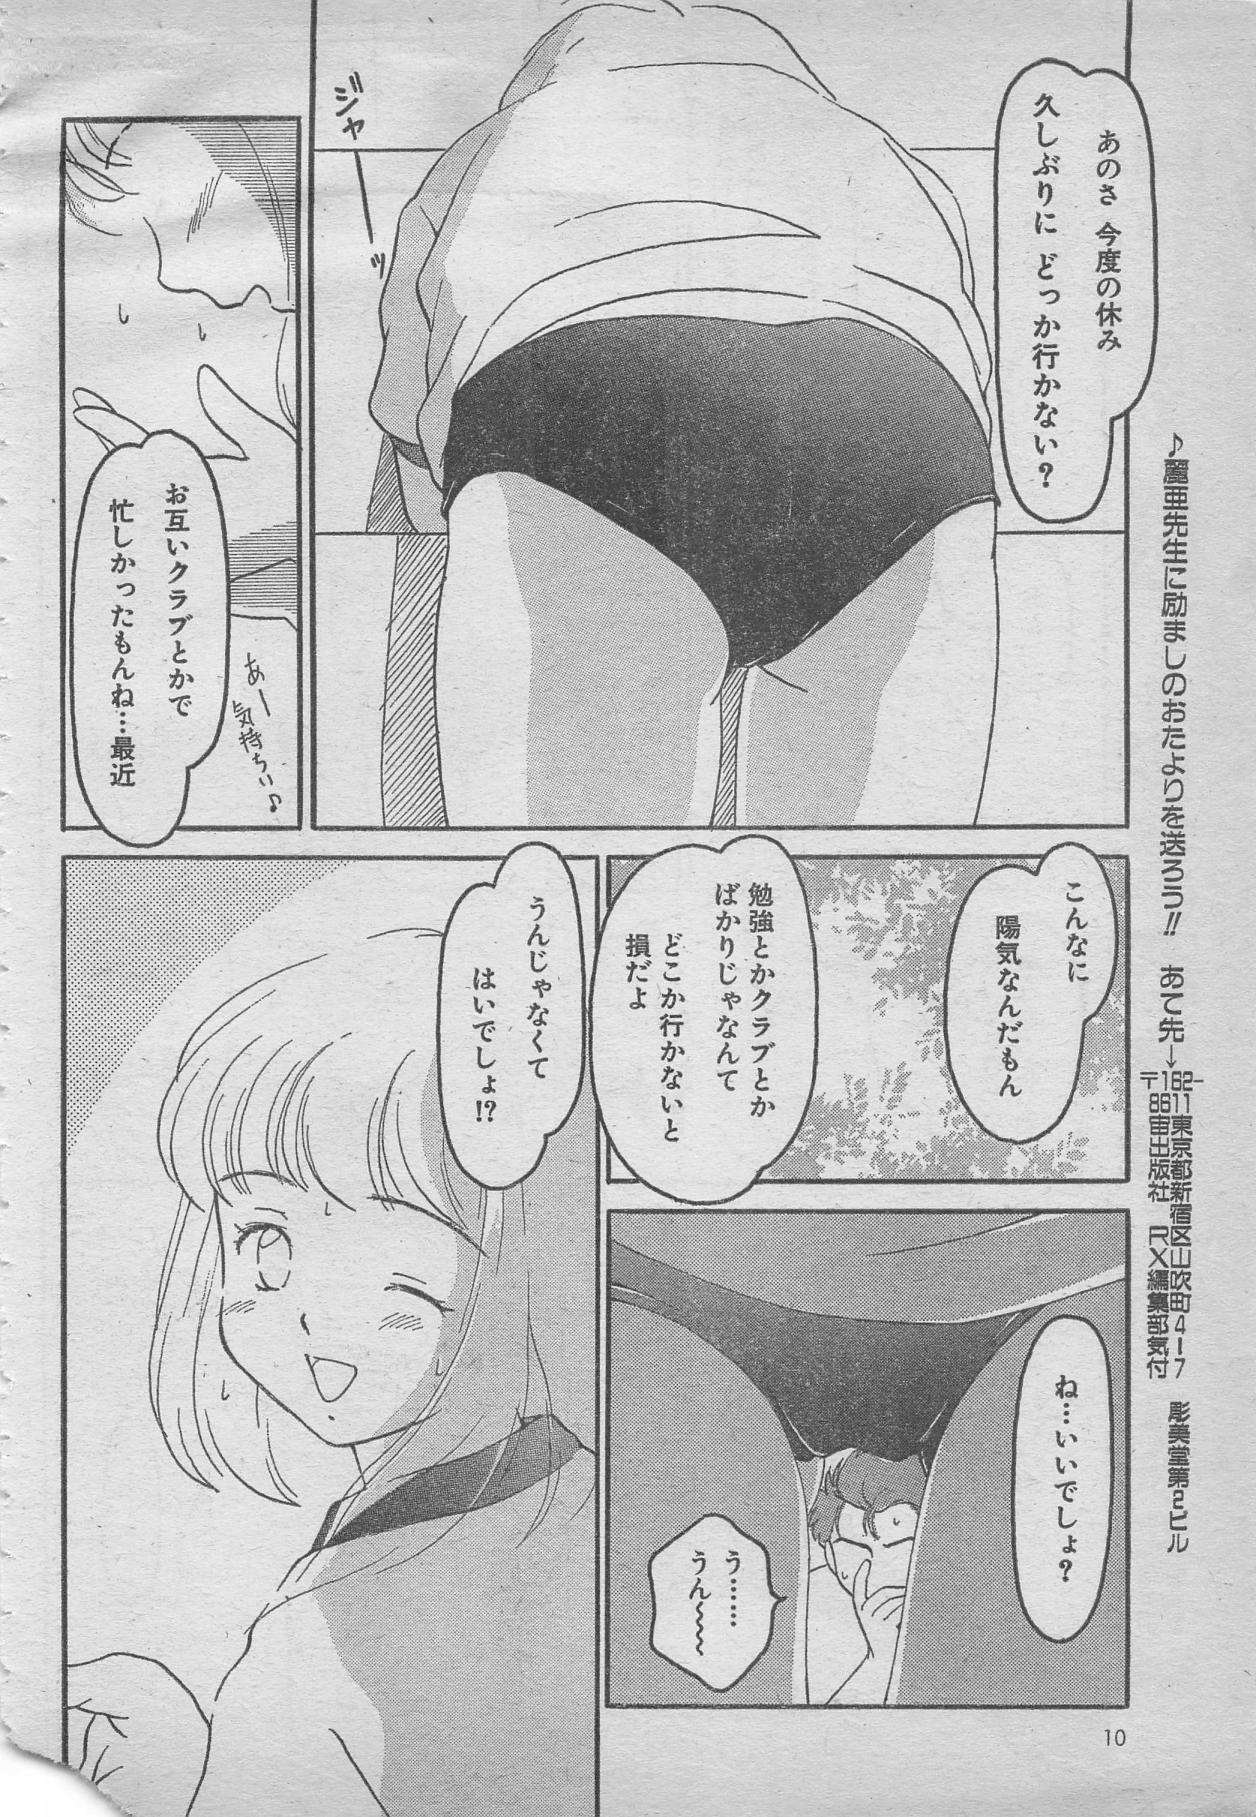 comic RX 1999 vol.5 9